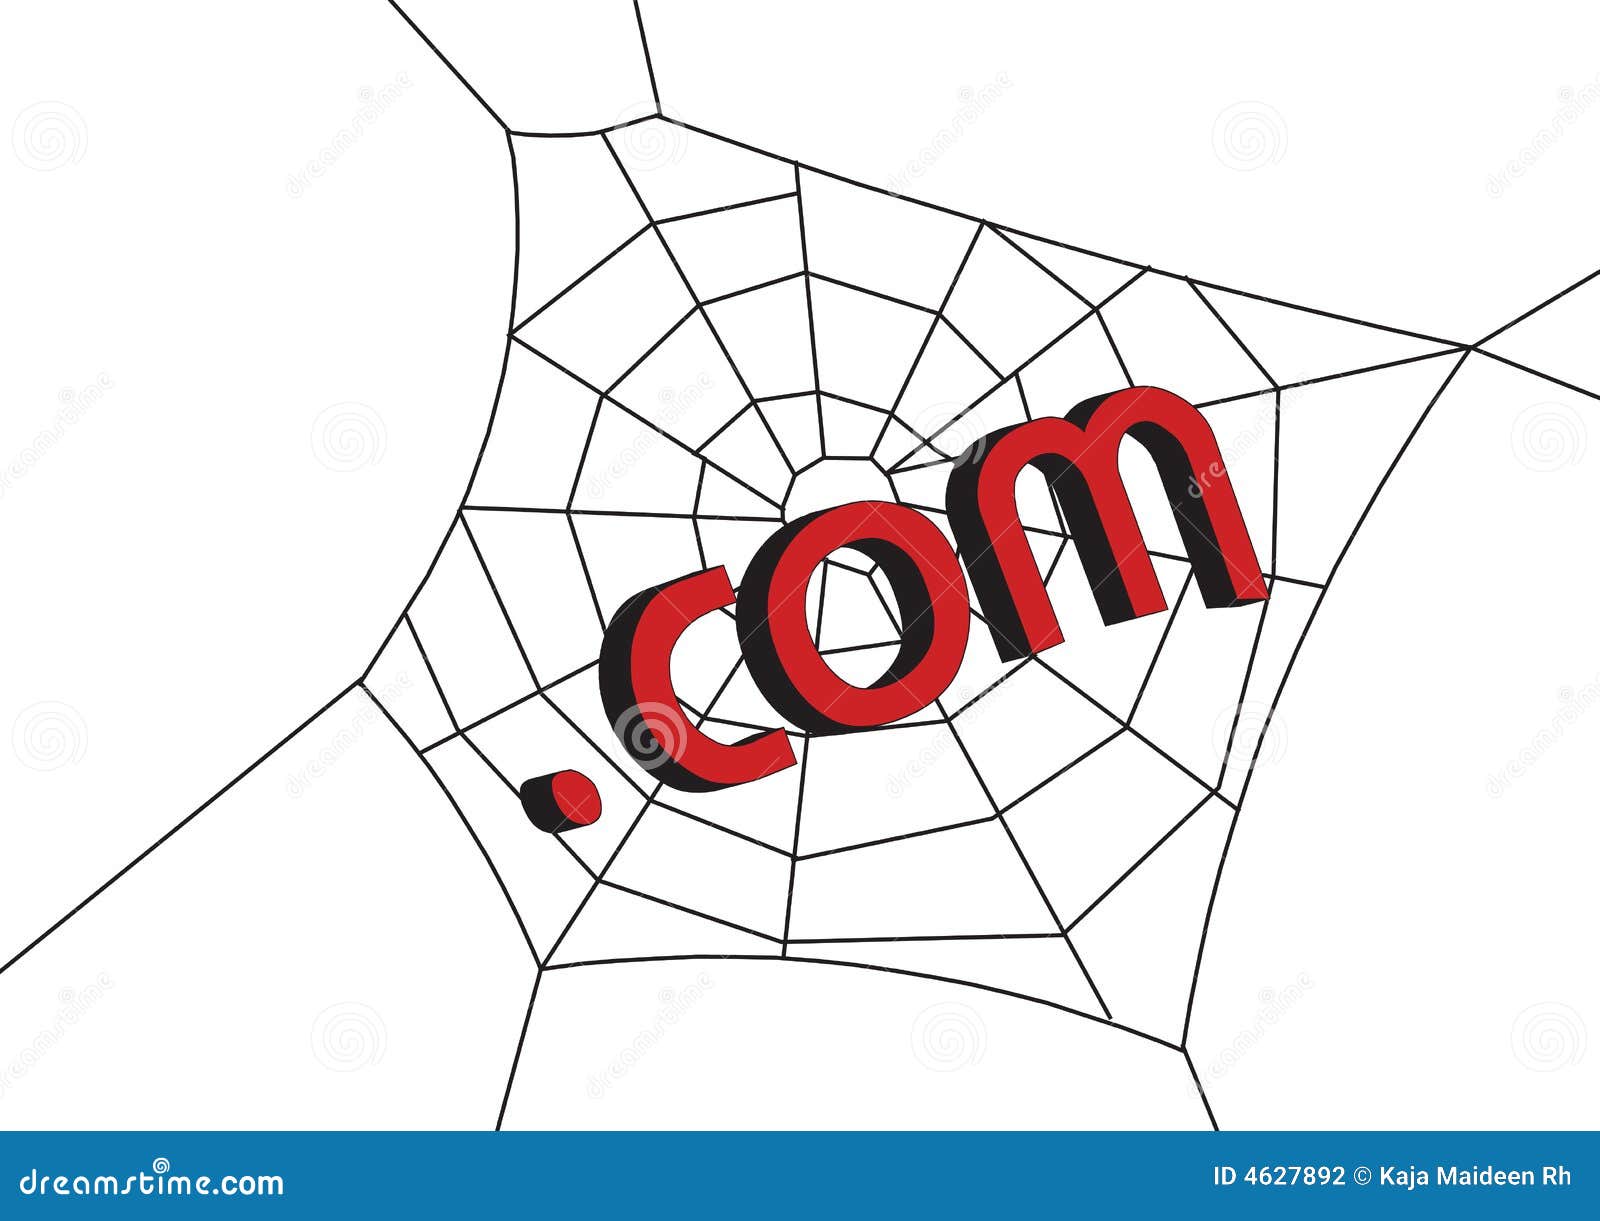 web with .com